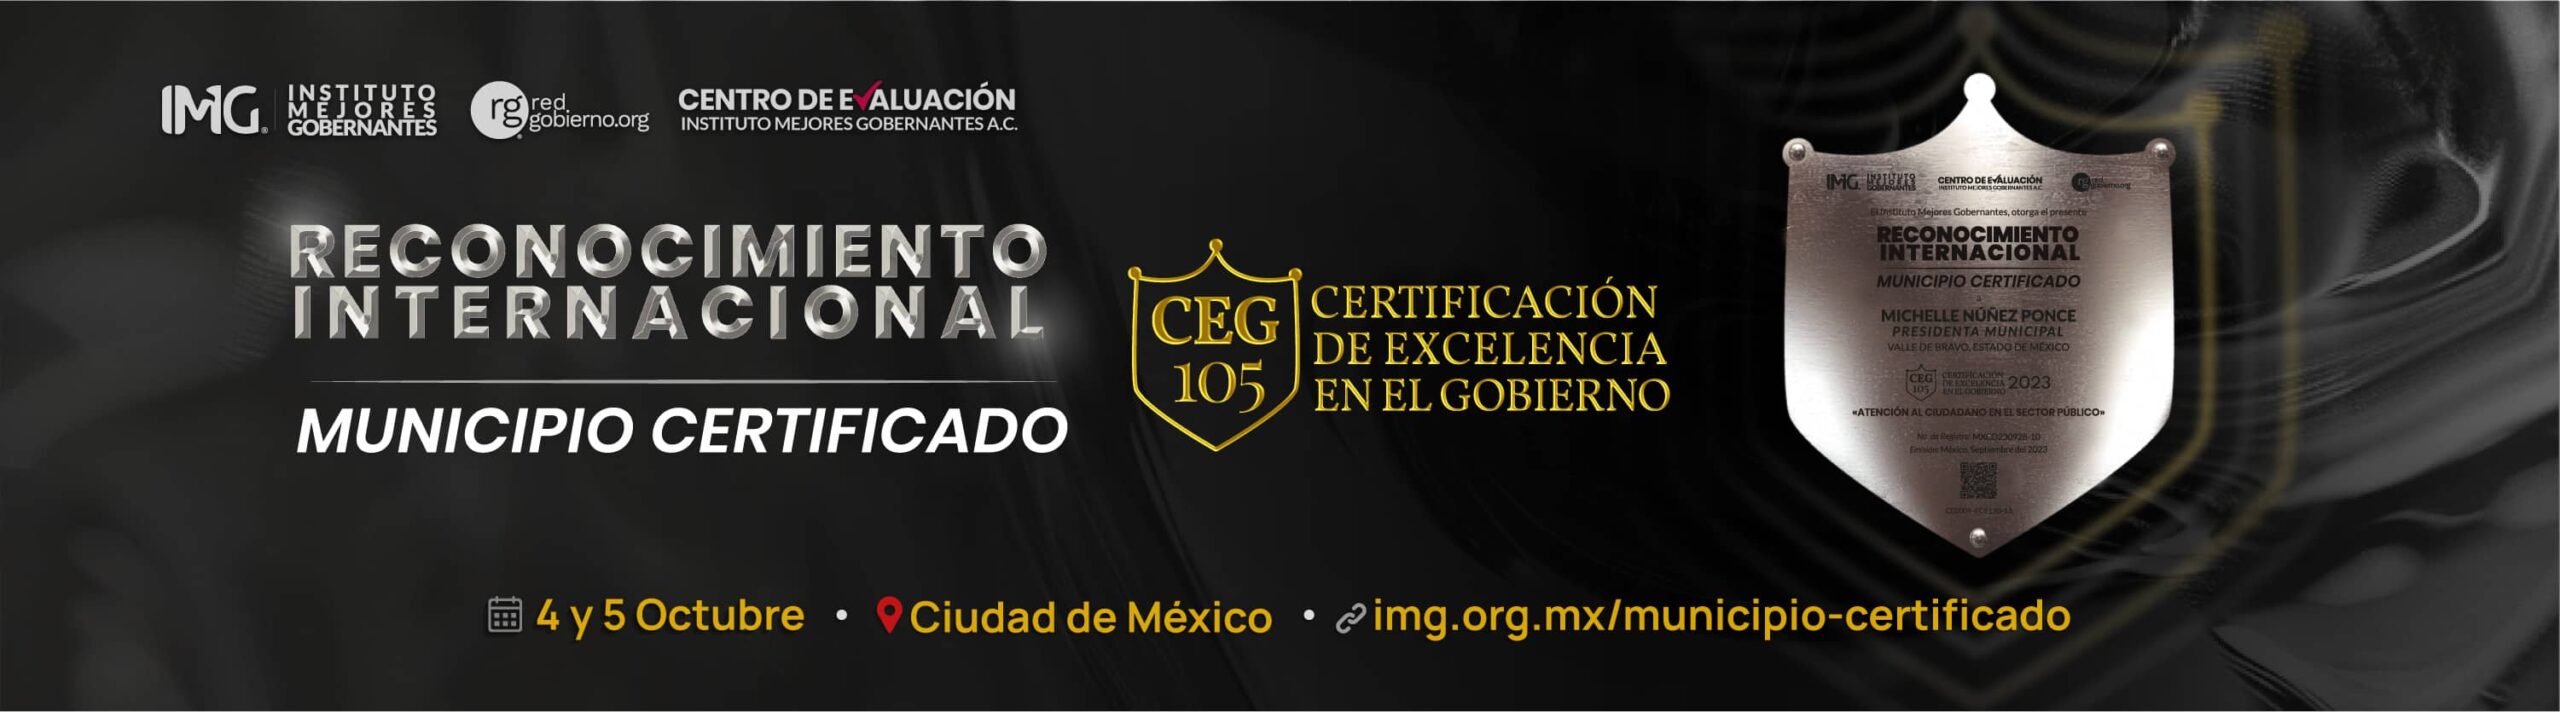 Reconocimiento Internacional Municipio Certificado CEG105 Instituto Mejores Gobernantes, Red Gobierno, Centro de Evaluación del Instituto Mejores Gobernantes